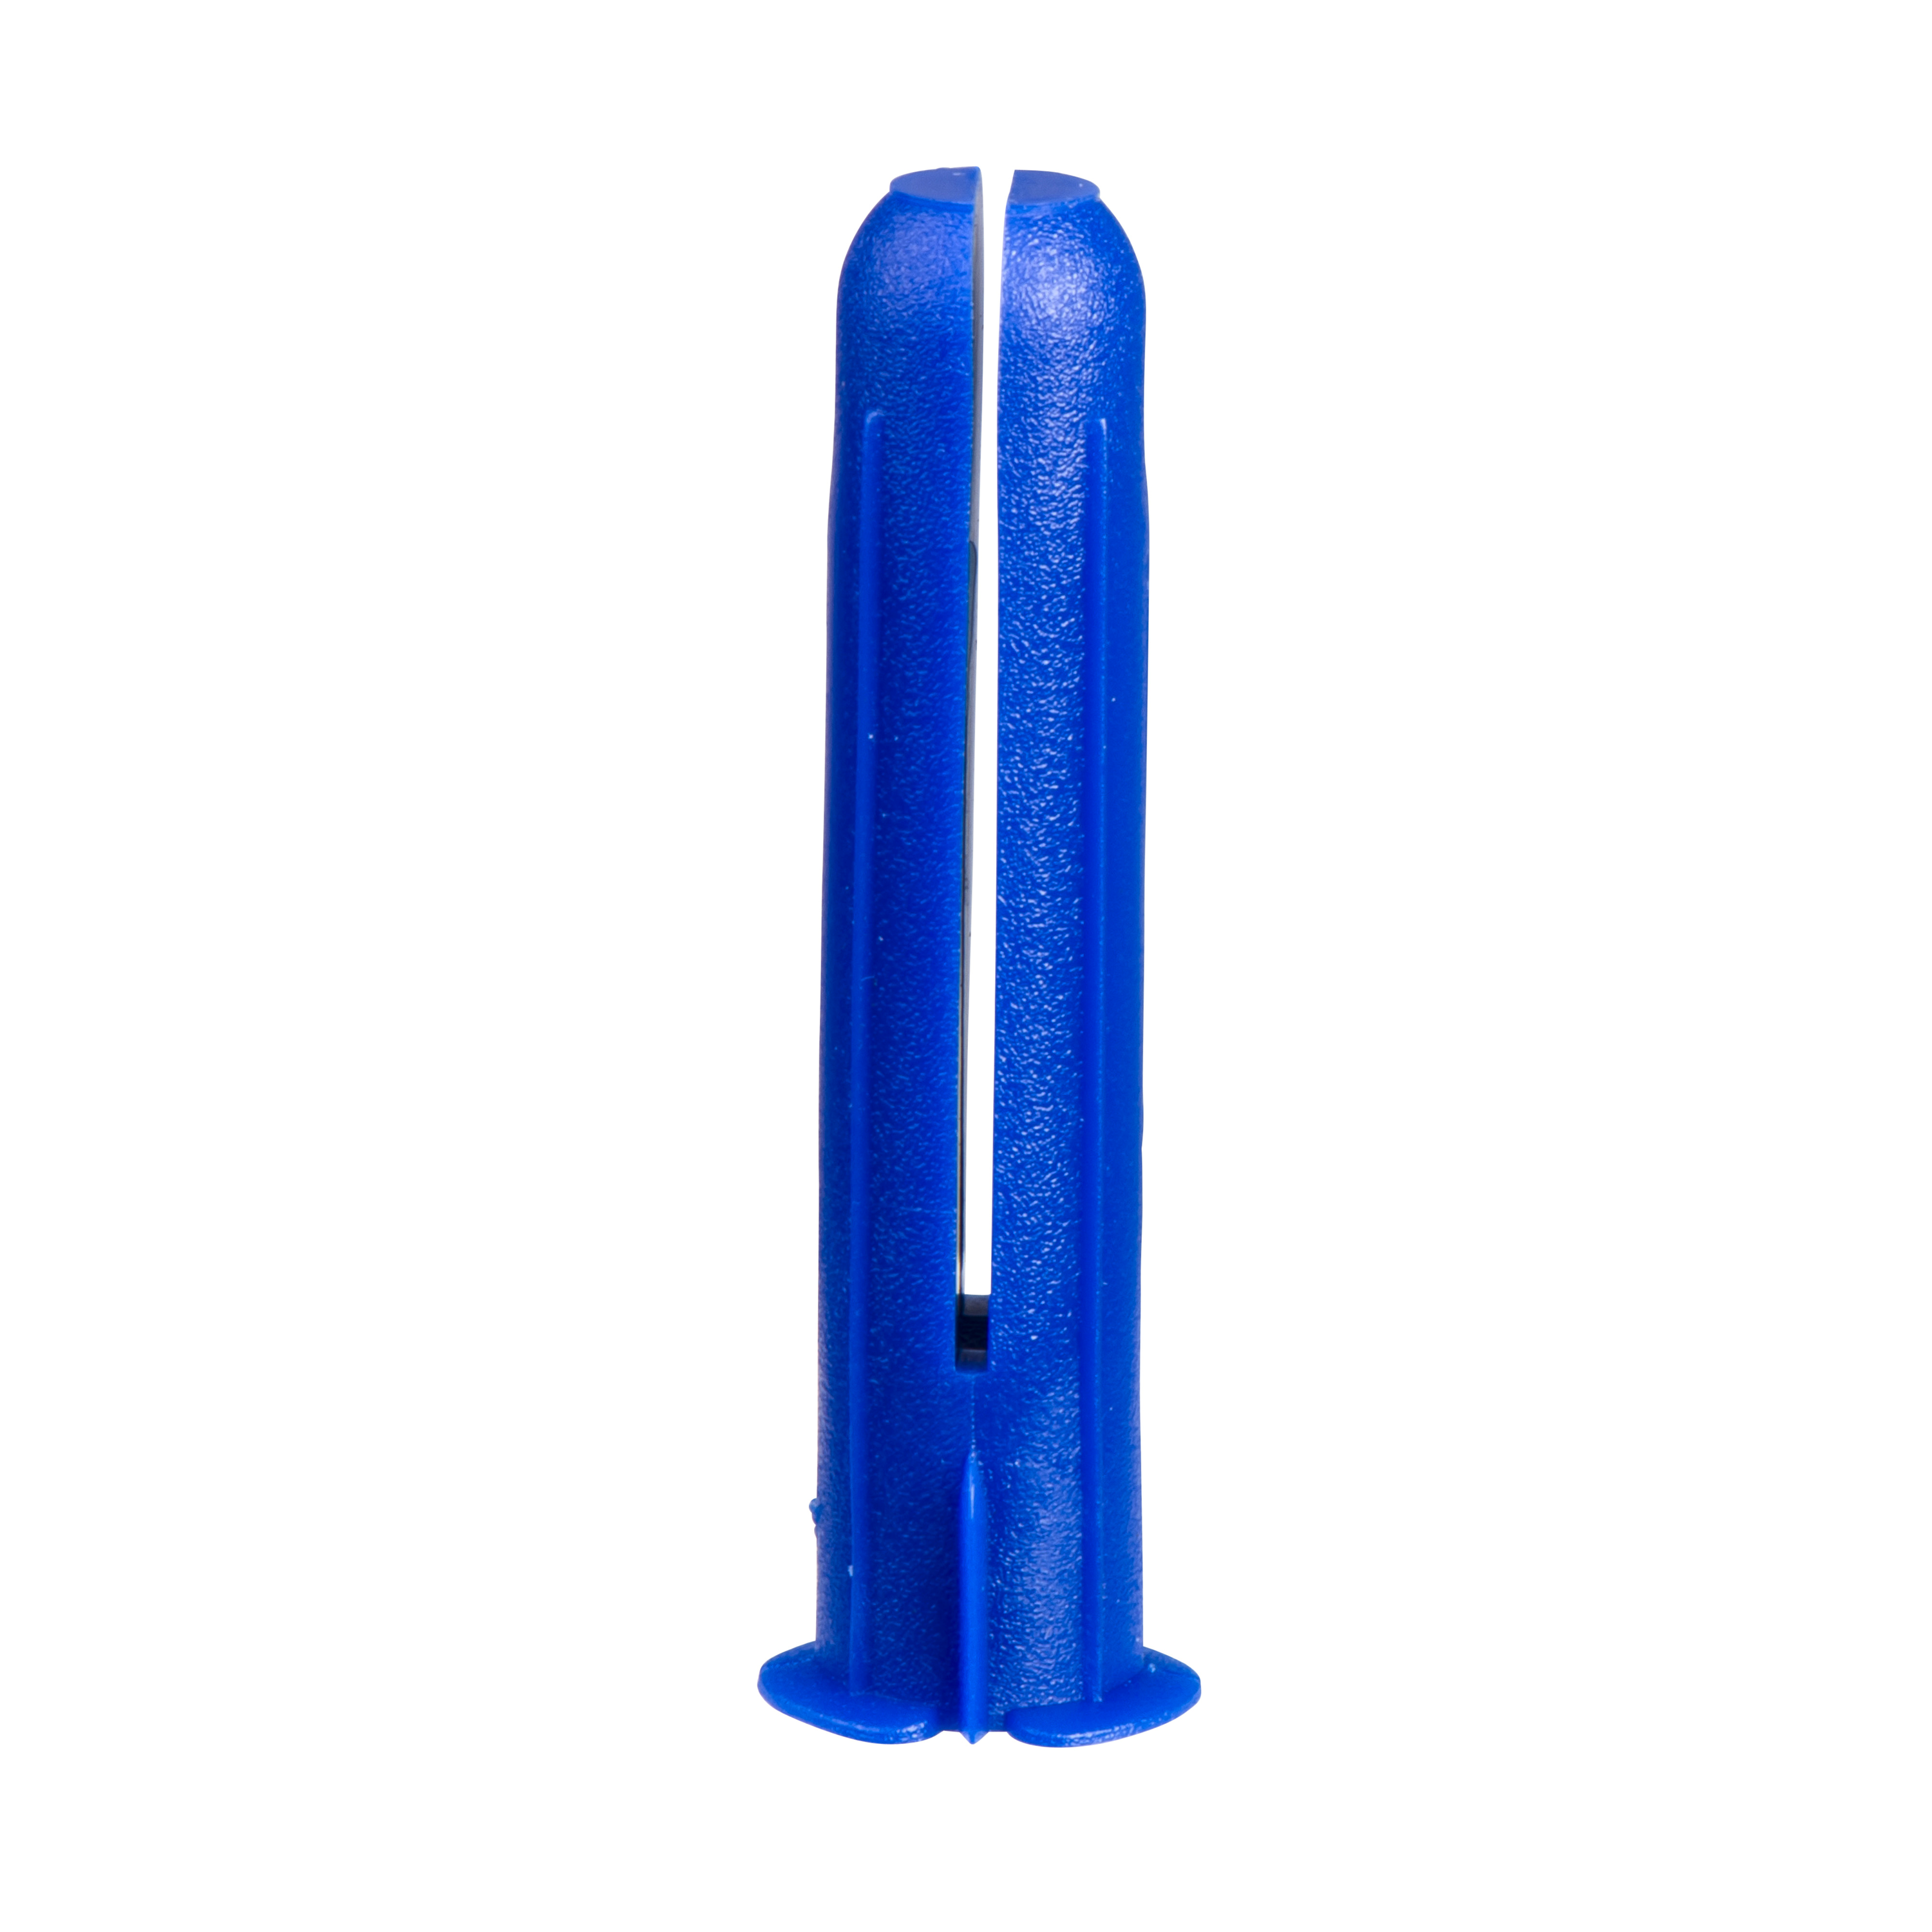 Schneider Universalduebel TP3 10x45mm blau Thorsman 100Stck/Packung 